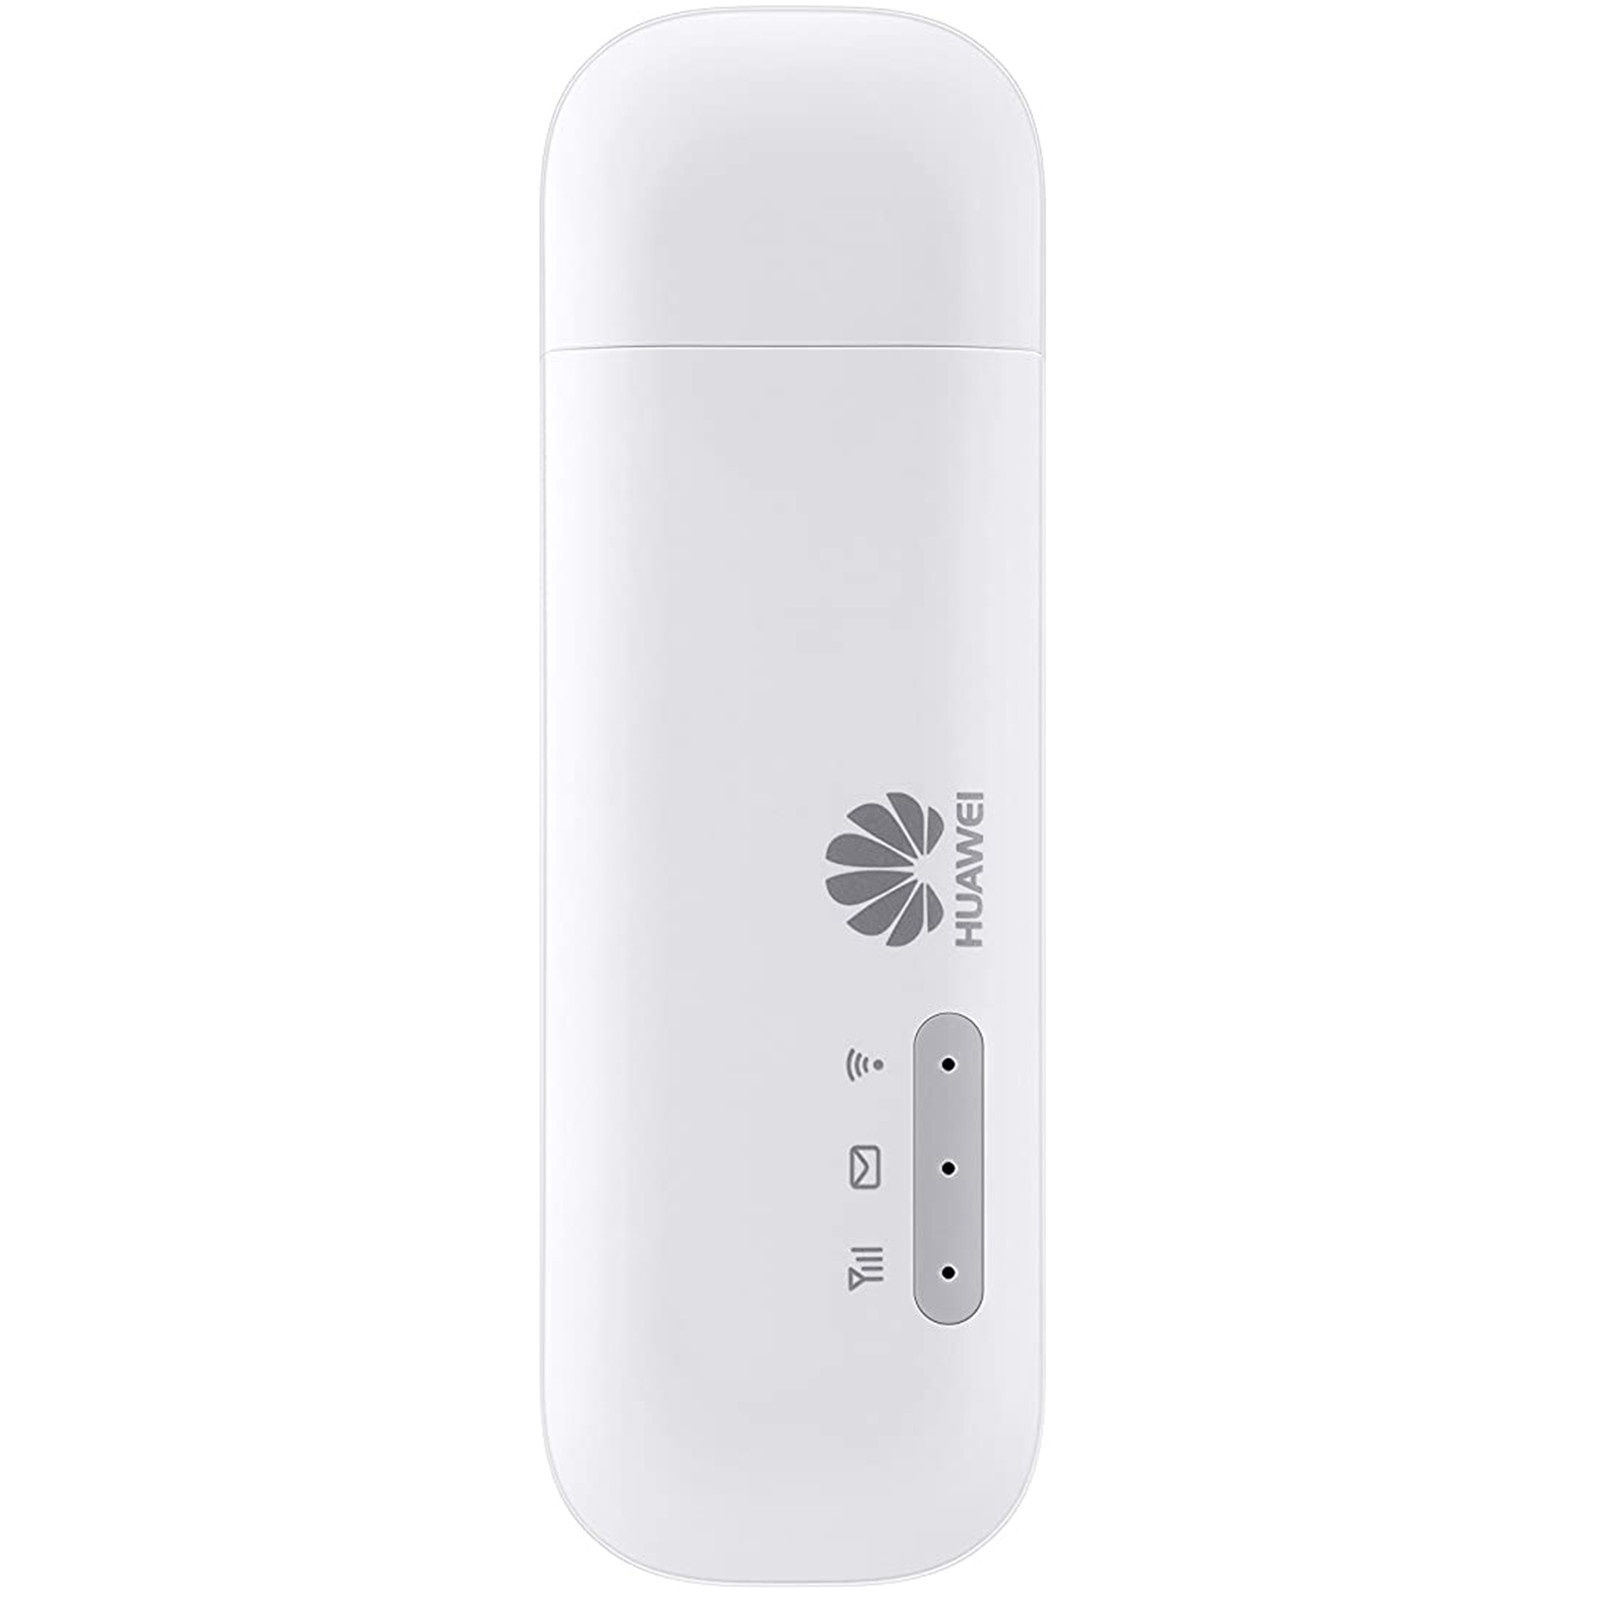 Huawei E8372h-153 4G  USB Mobile Wi-Fi Hotspot